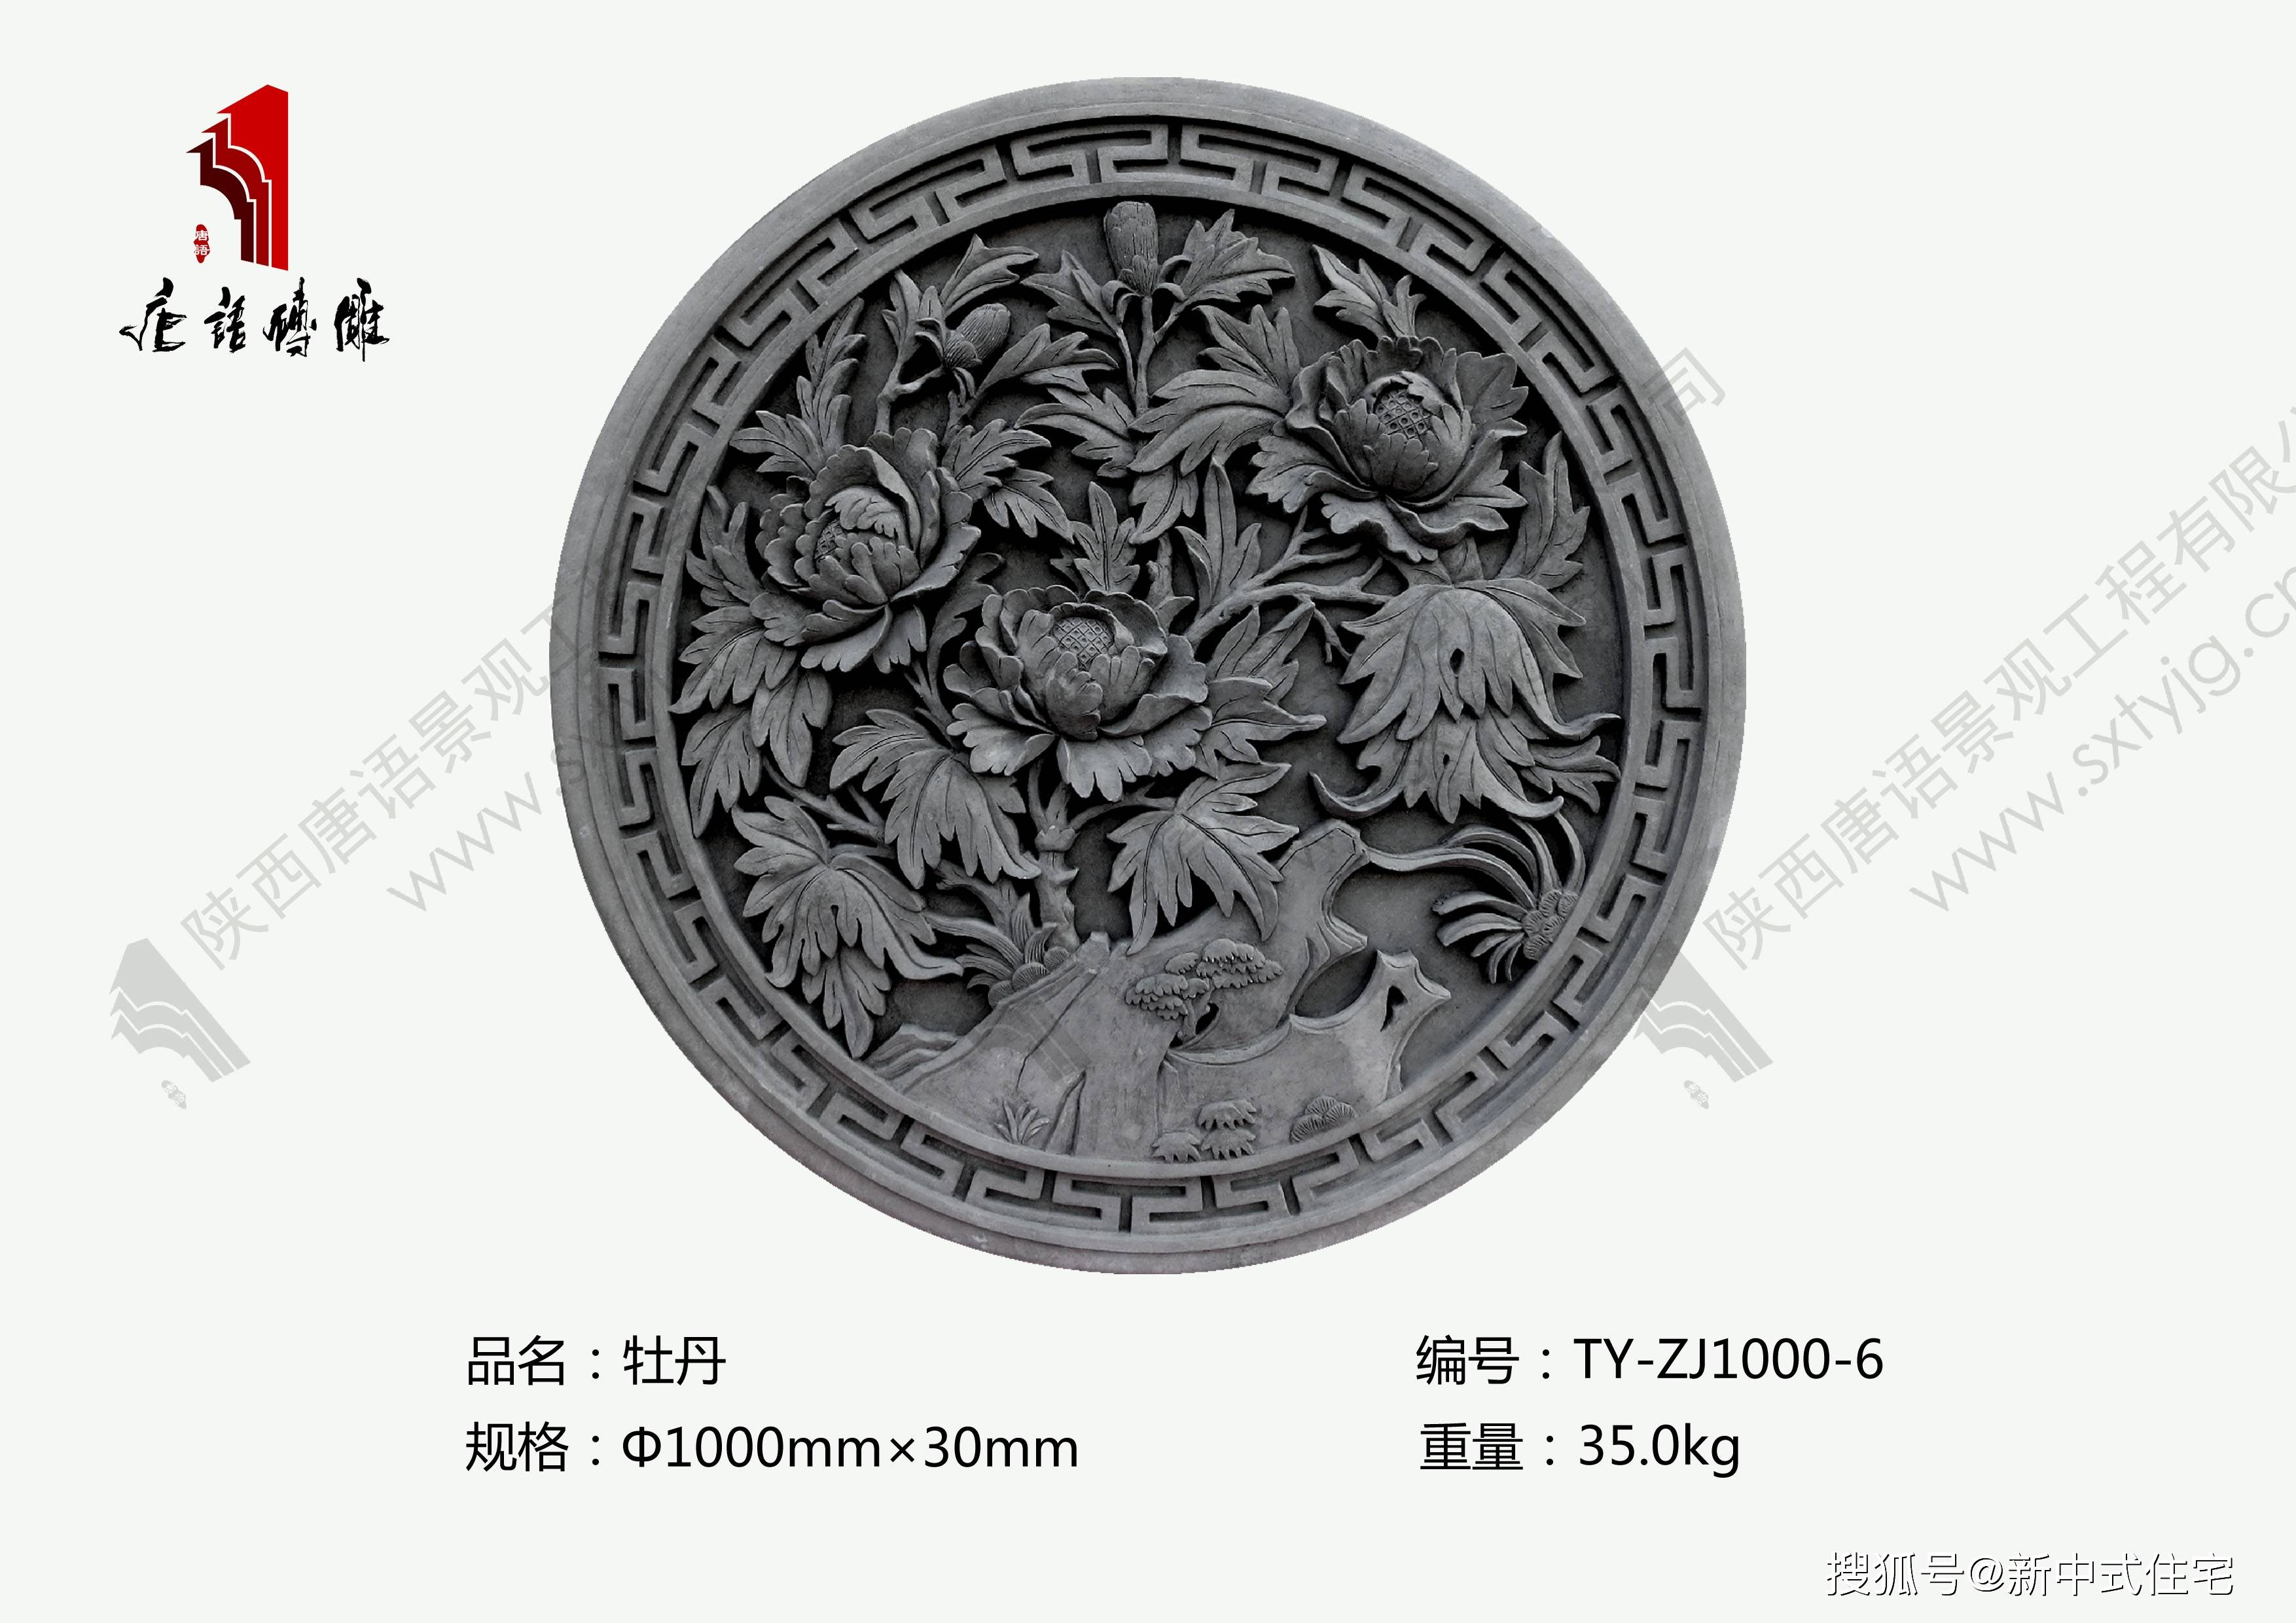 唐语中式文化砖仿古资材:直径1米牡丹砖雕规格及图片案例,图案精美